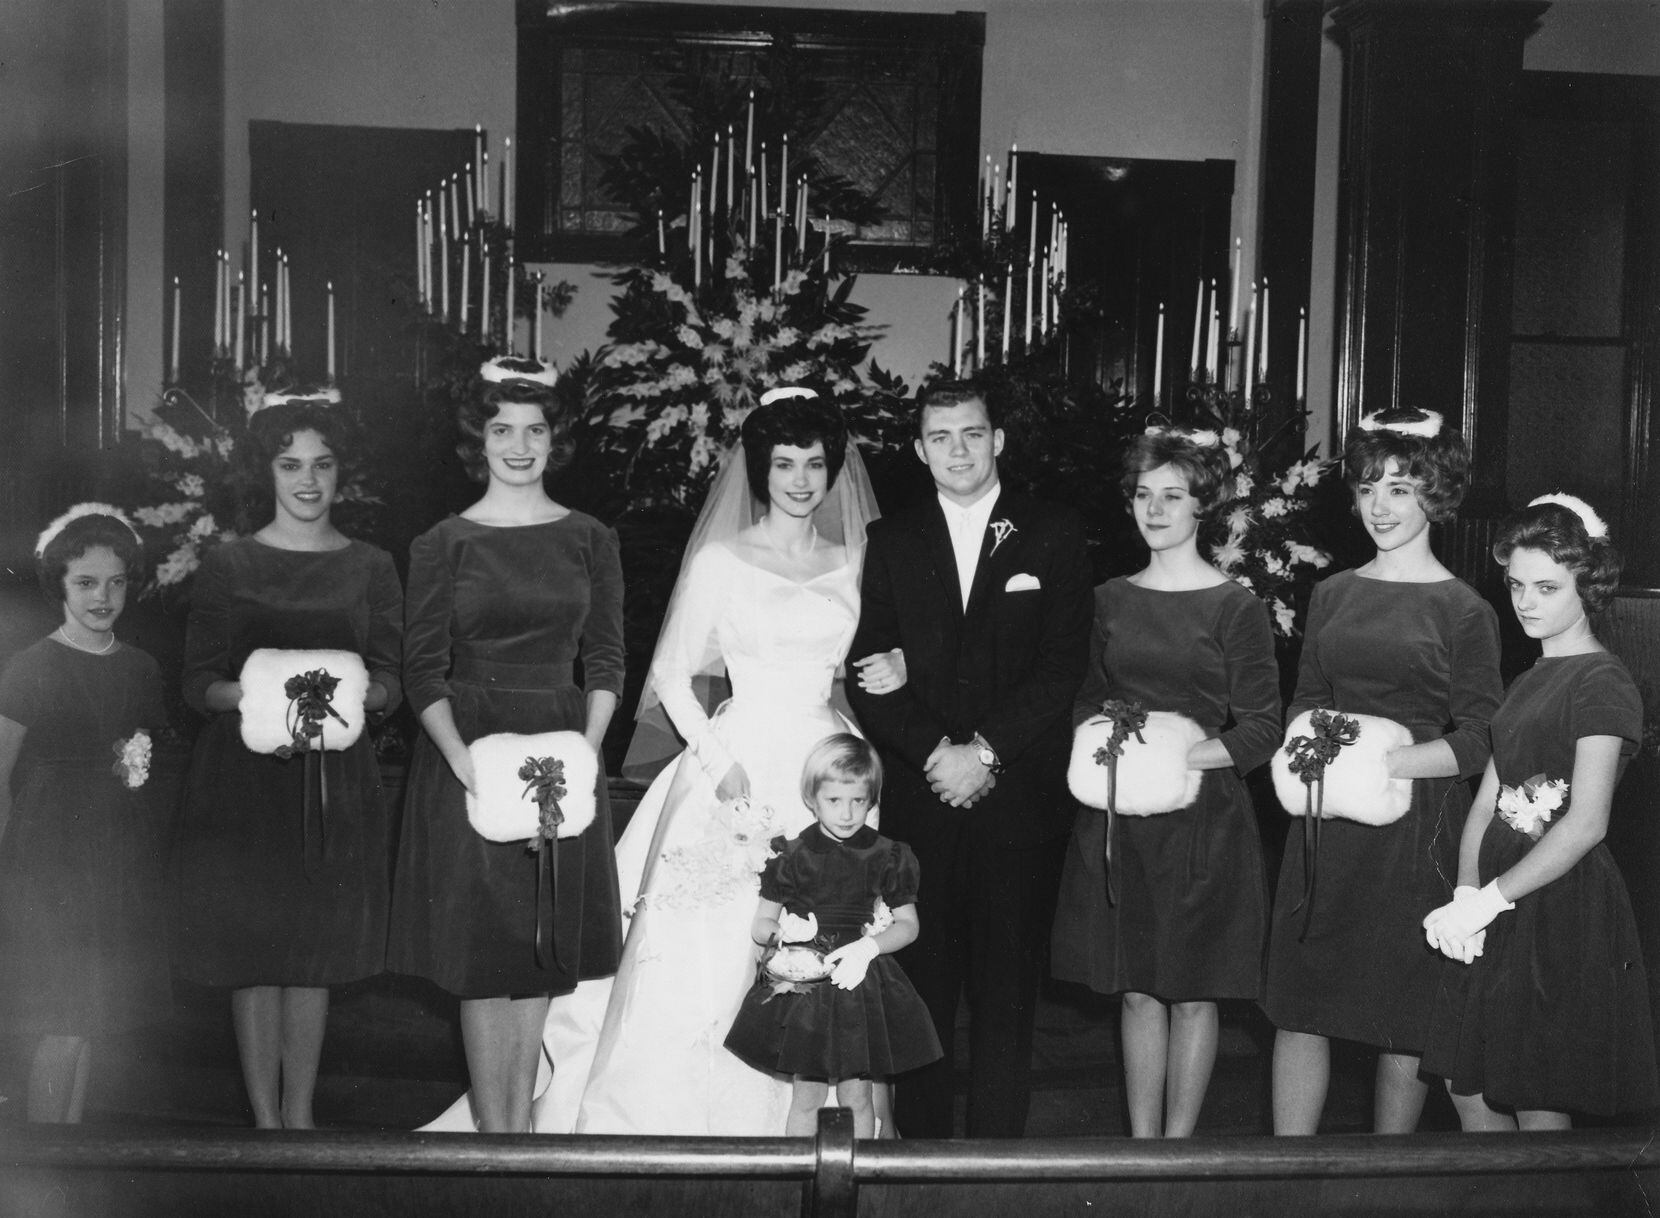 The wedding of Gene and Jerry Jones in 1963. Jerry Jones went to the University of Arkansas...